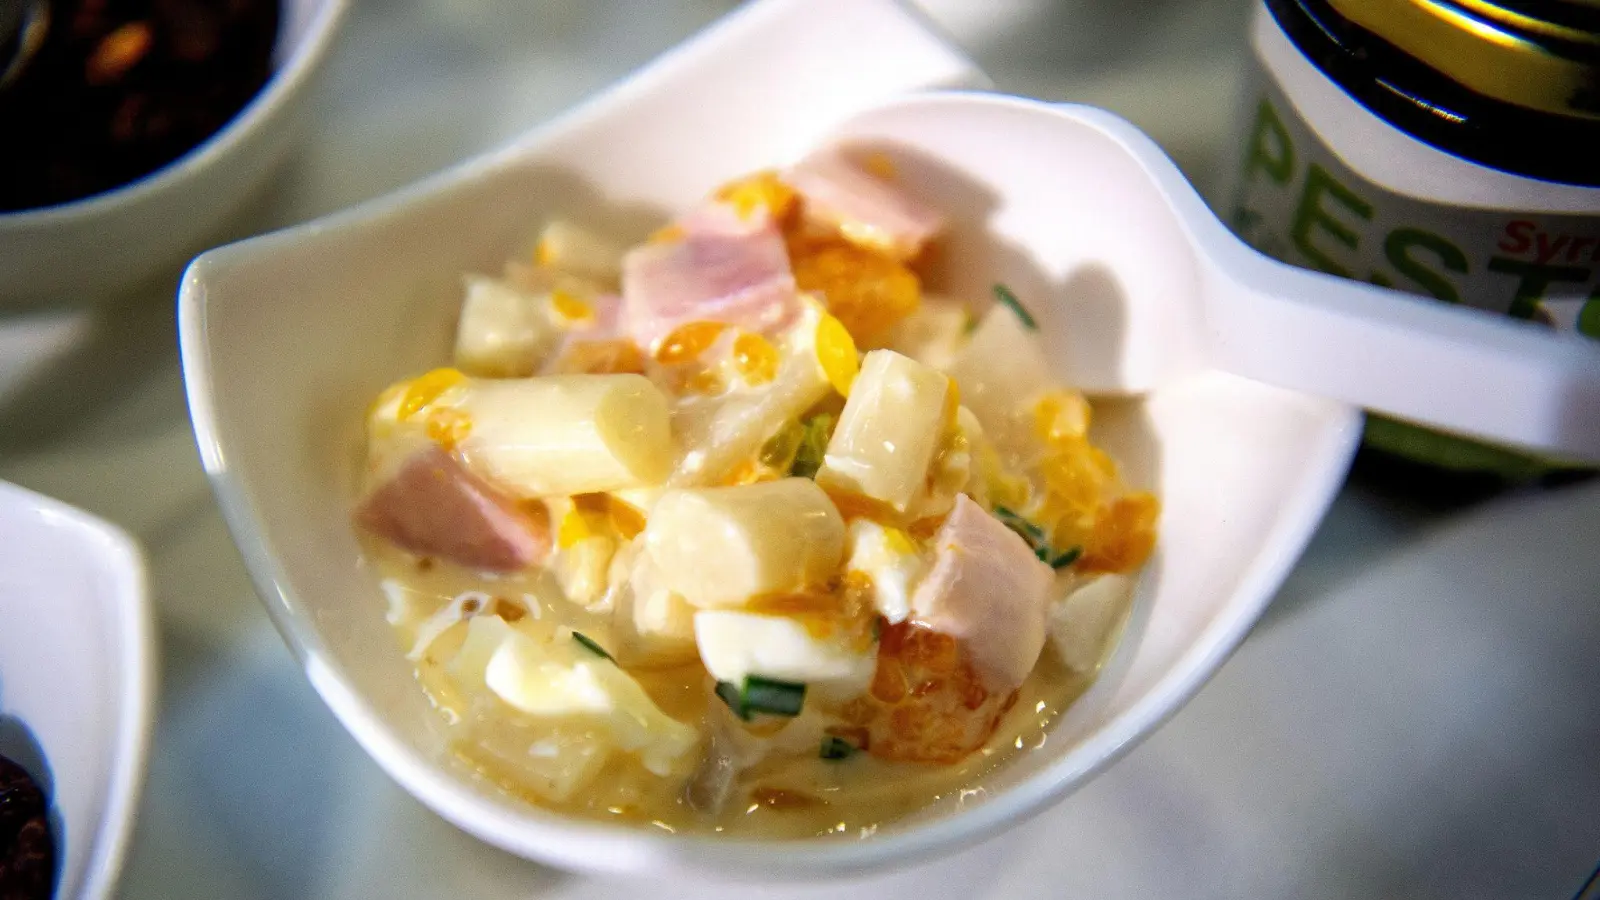 Durch Mandarinensaft und -stückchen bekommt der frühsommerliche Spargelsalat eine fruchtige Note. (Foto: Bernd Diekjobst/dpa-tmn)